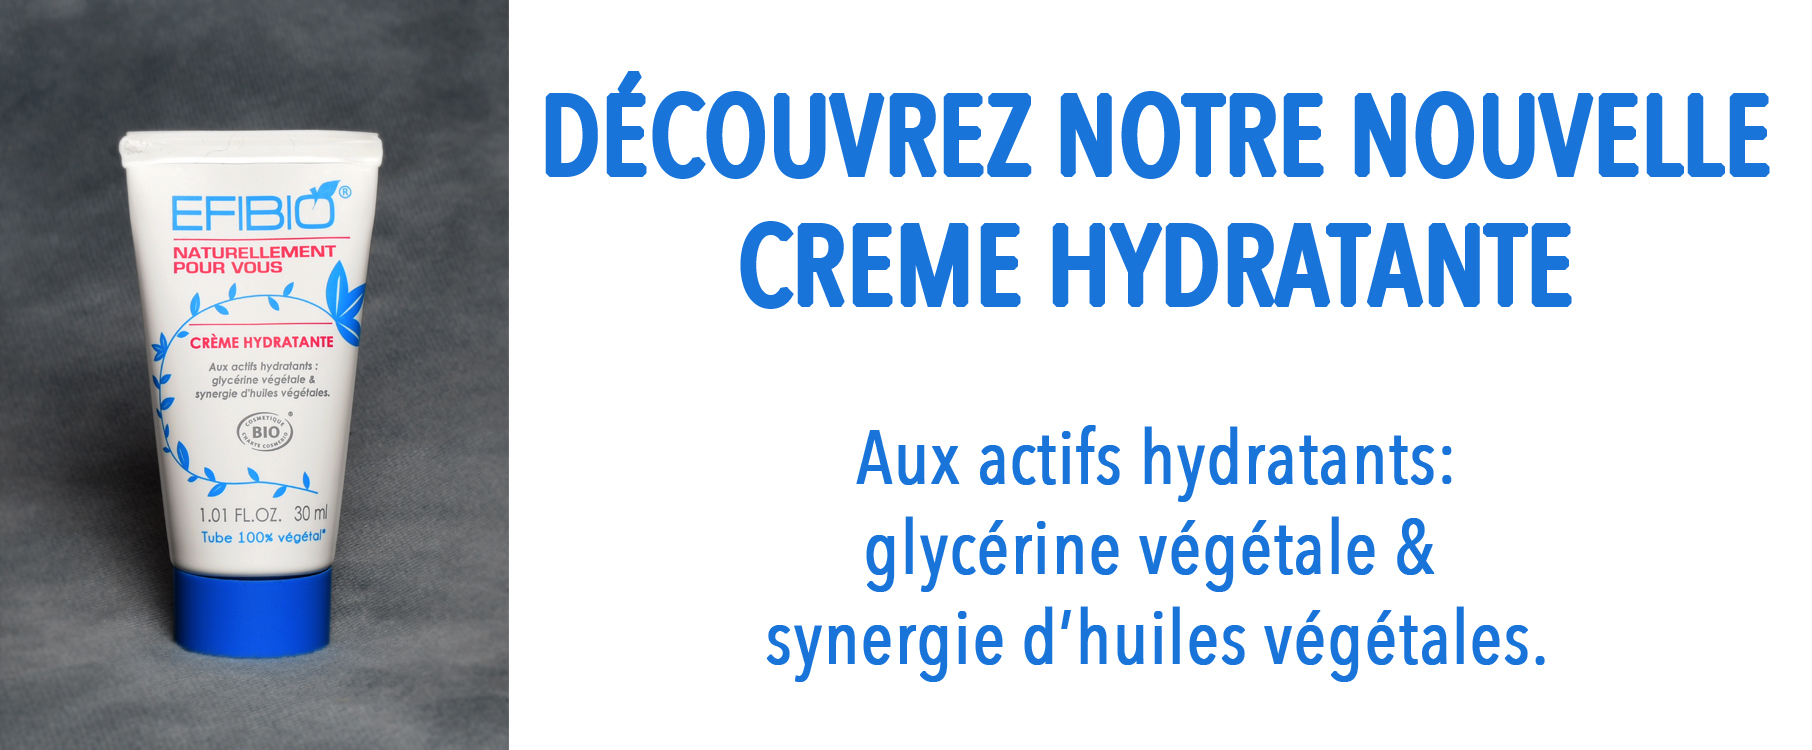 NOUVEAU: crème hydratante avec tube en plastique végétal fabriqué dans le Gers